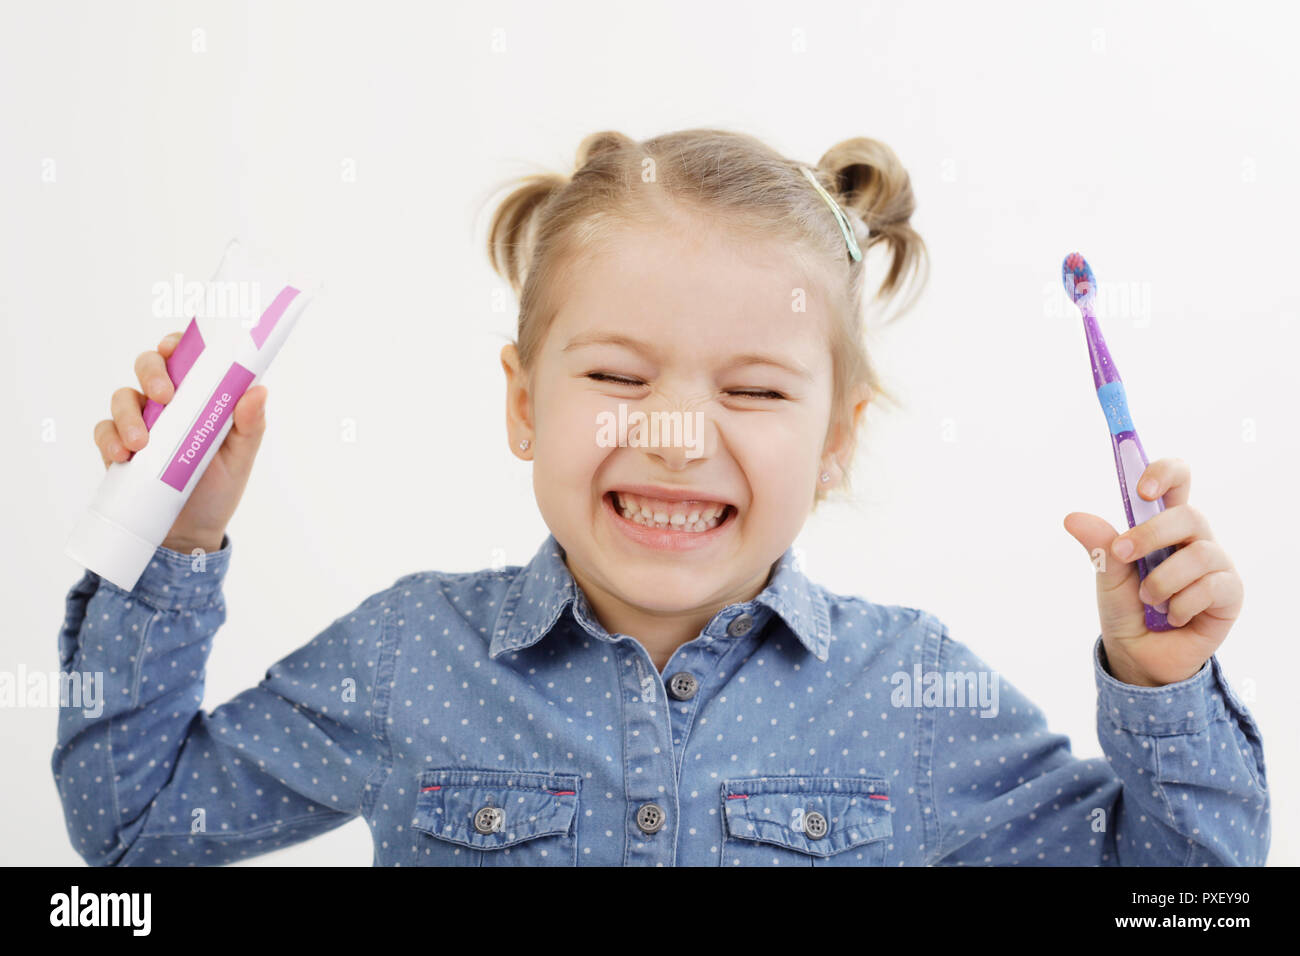 Soins dentaires pour enfants concept. Jolie fillette de cinq ans, tenant sa brosse à dents et du dentifrice et montrant ses dents dans le grand sourire. Banque D'Images